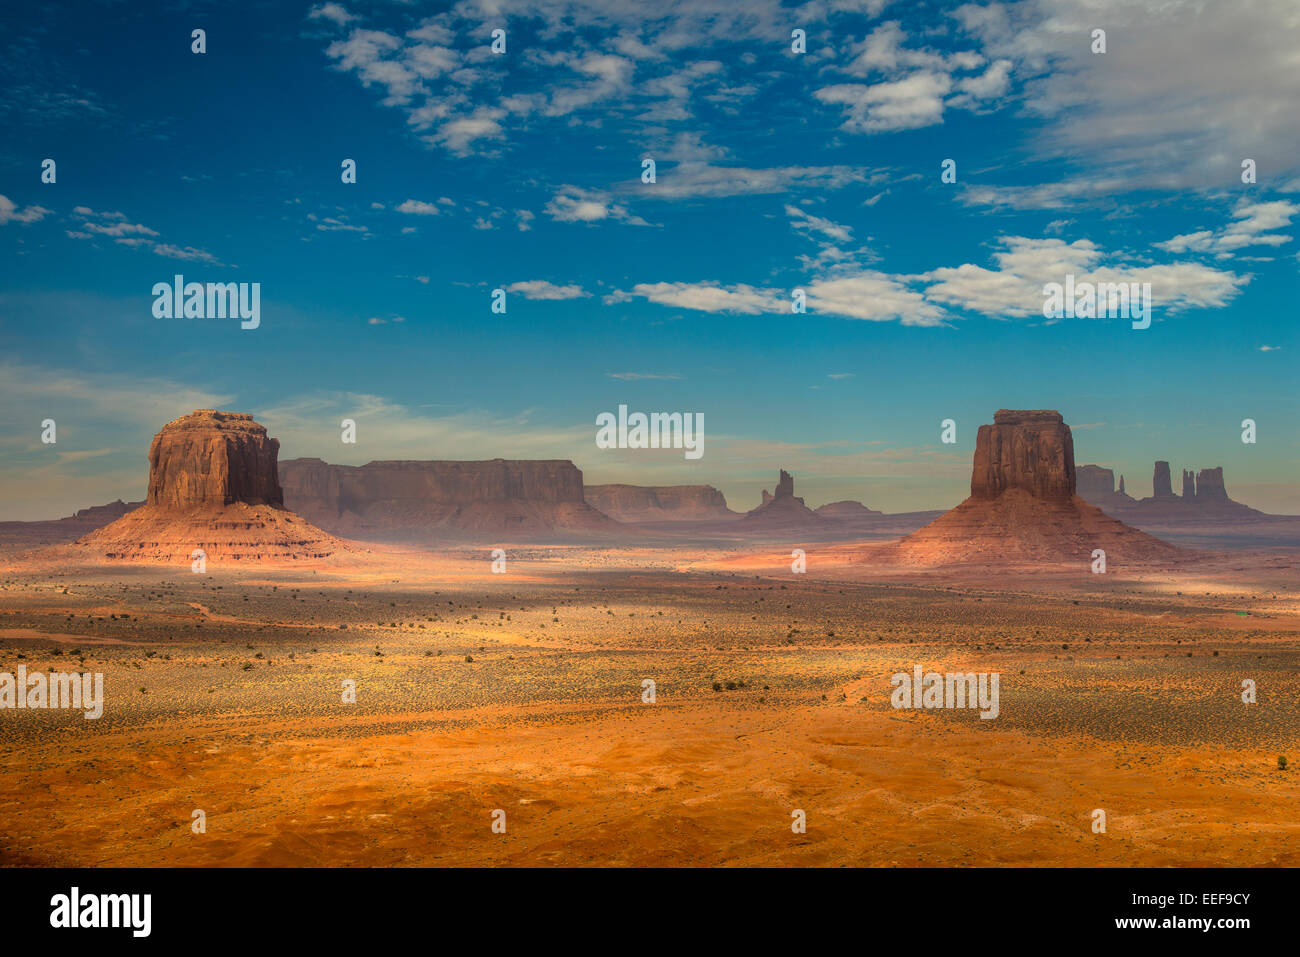 Vue panoramique de l'artiste, Point de Monument Valley Navajo Tribal Park, Arizona, USA Banque D'Images